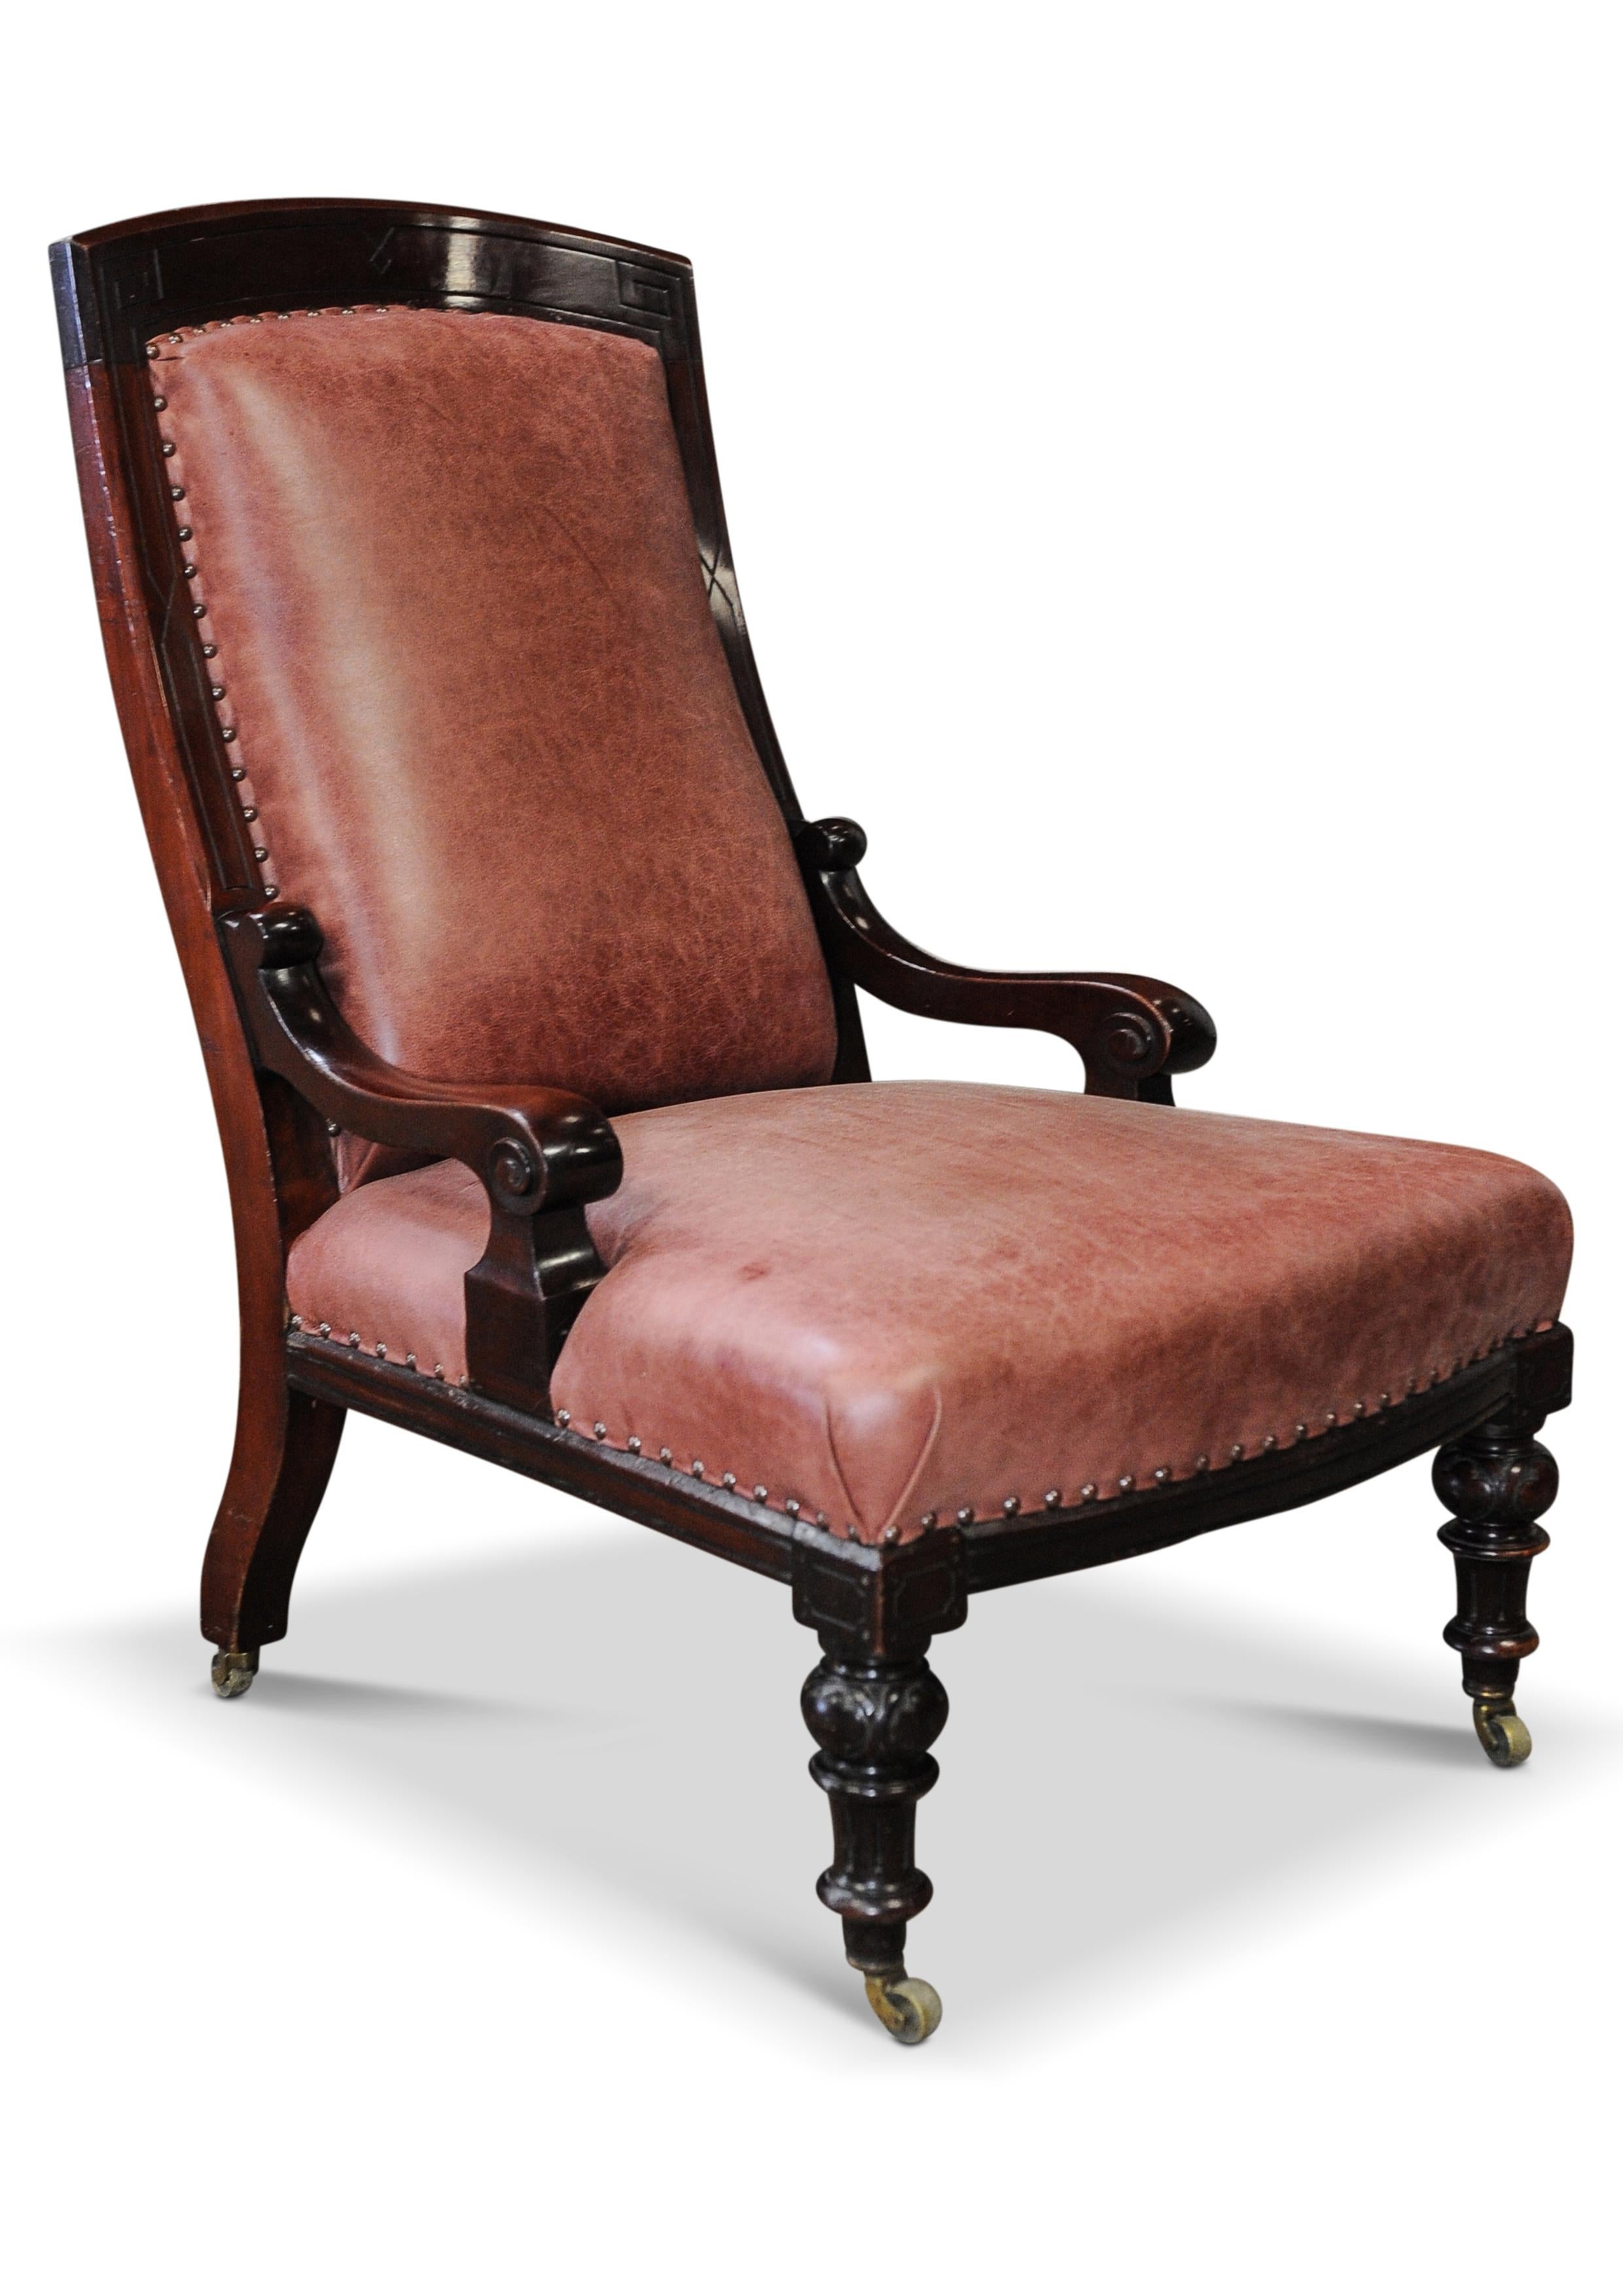 Elegant fauteuil de bibliothèque William IV en cuir et acajou avec bois sculpté athénien et détails cloutés en laiton sur roulettes en laiton 1800's

